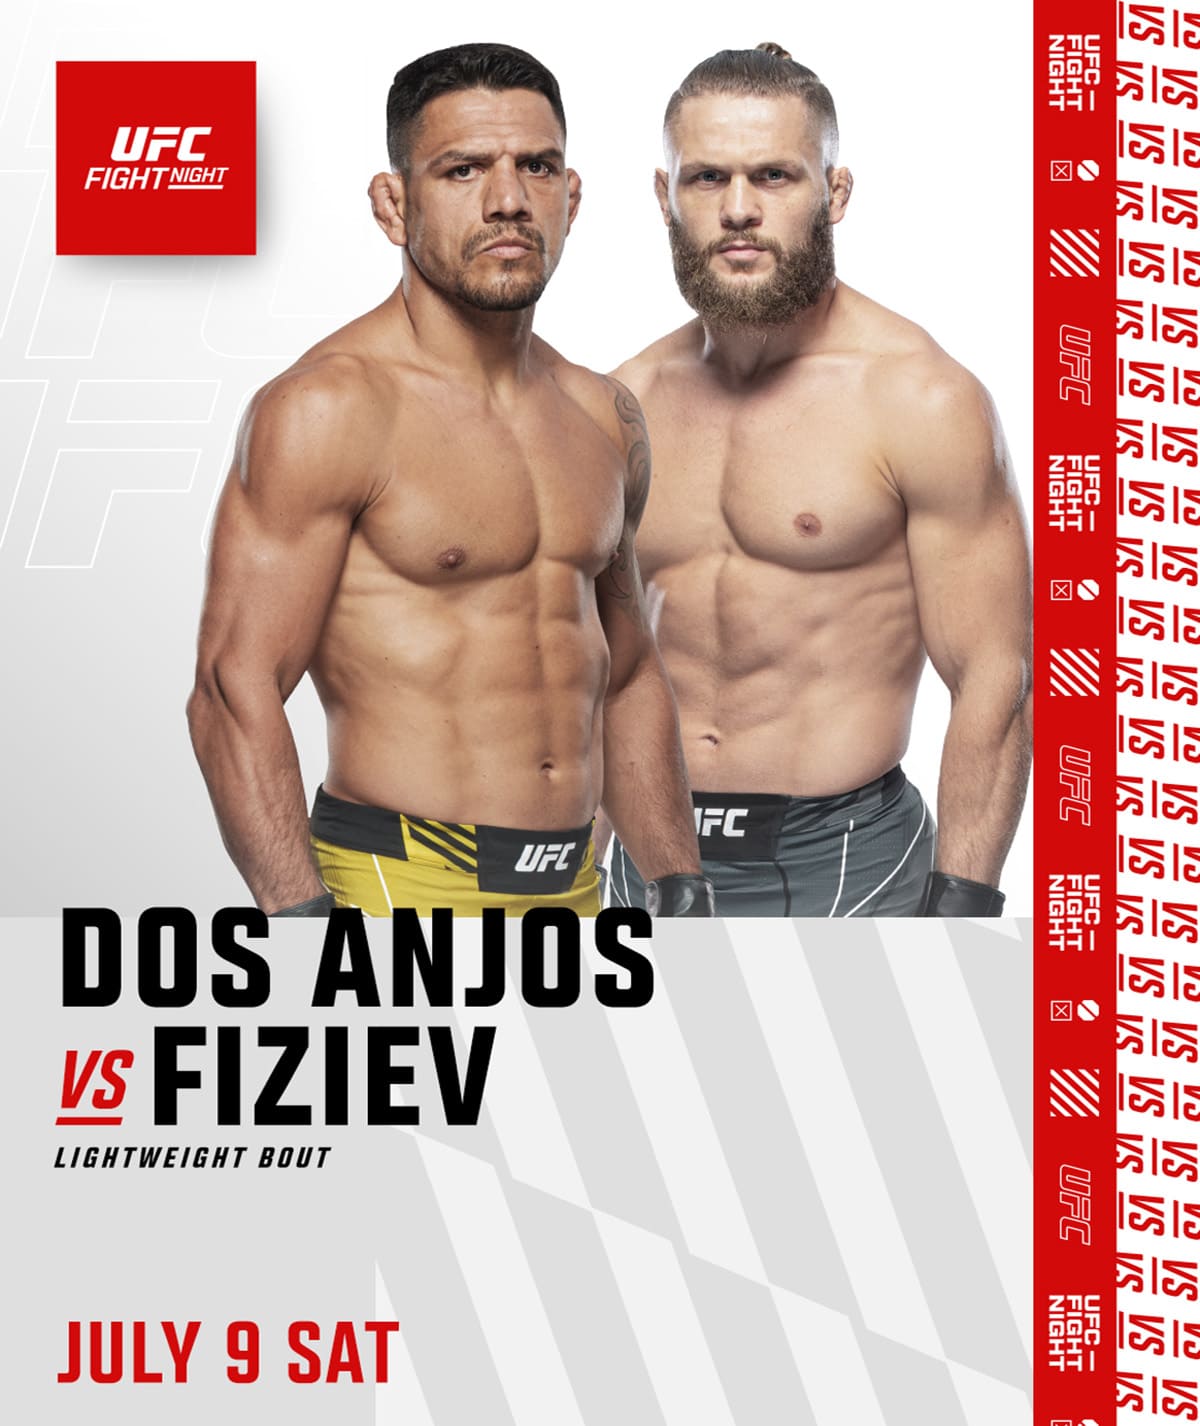 UFC on ESPN 39: Дос Аньос - Физиев дата проведения, кард, участники и результаты